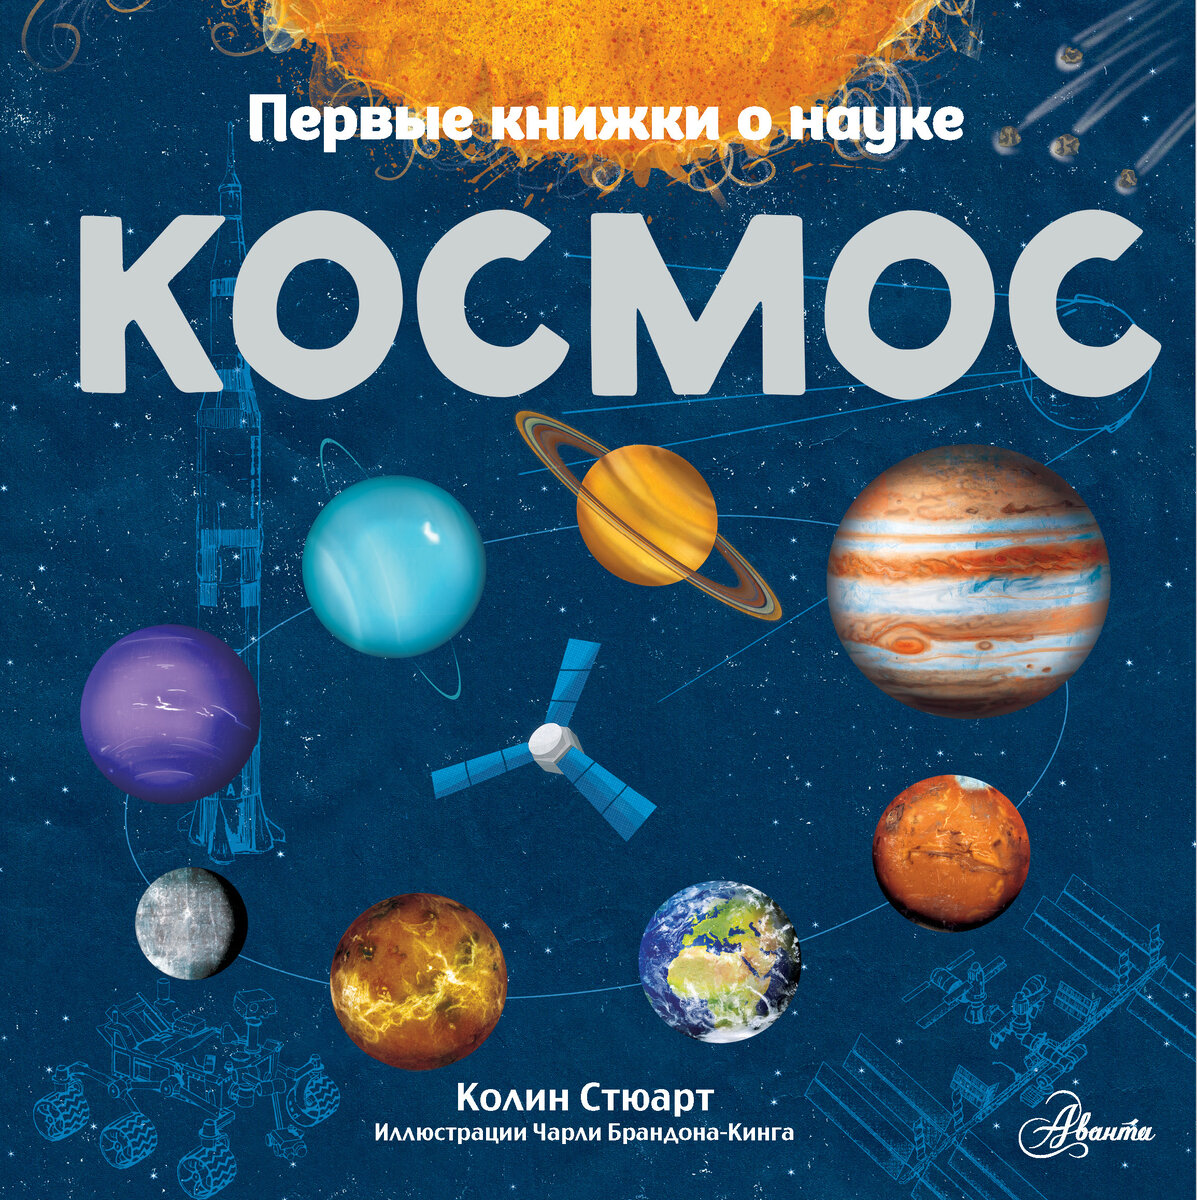 Книги о космосе